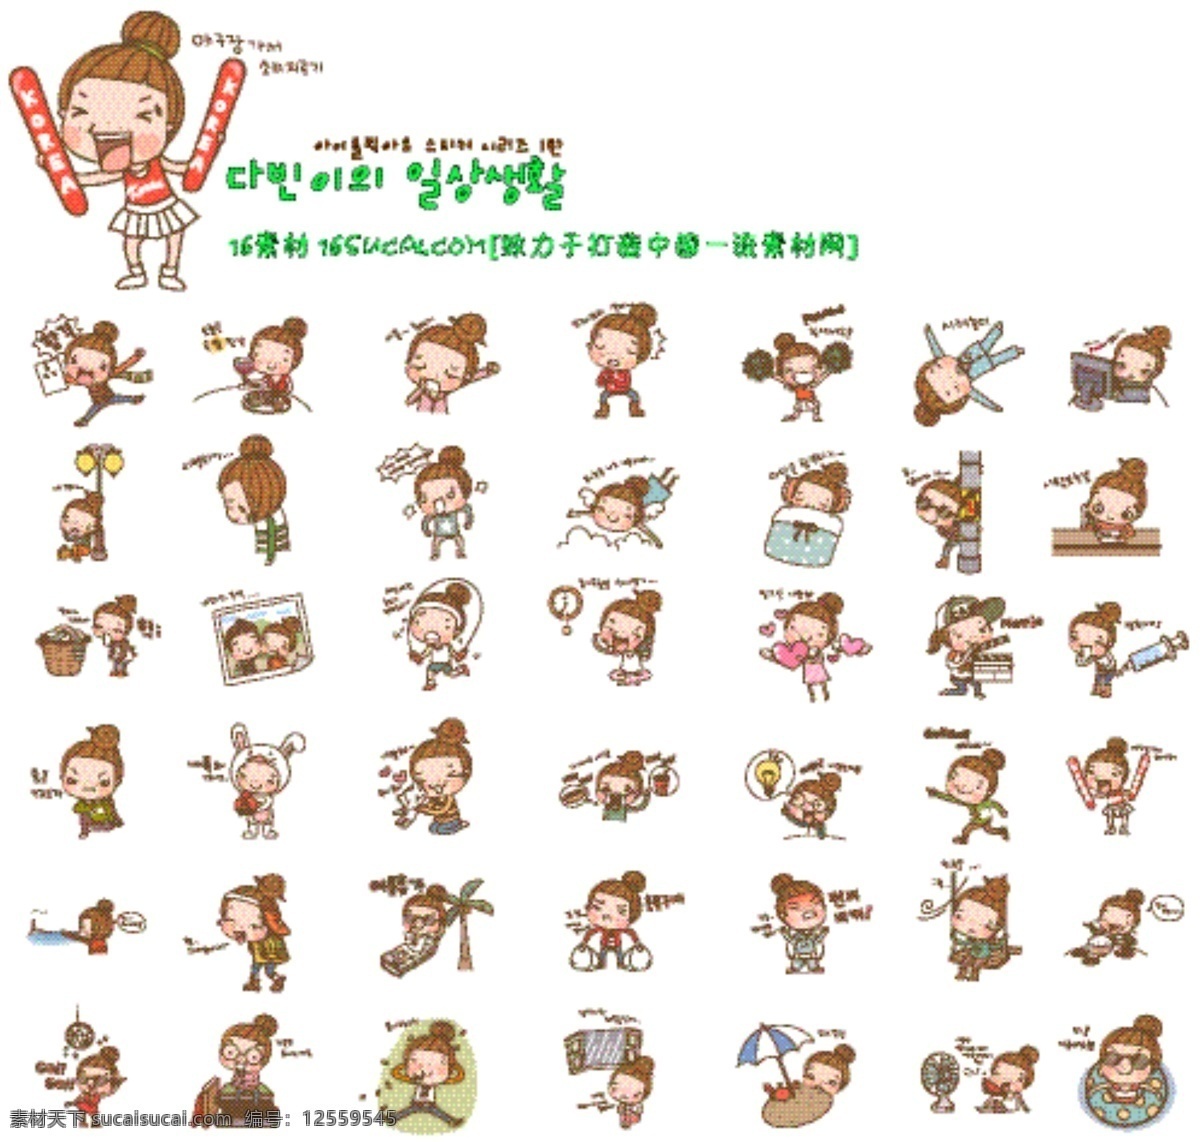 韩国卡通人物 矢量素材 韩国女孩 各种表情 生活场景 人物设定 q版 搞笑人物 矢量图 动漫动画 动漫人物